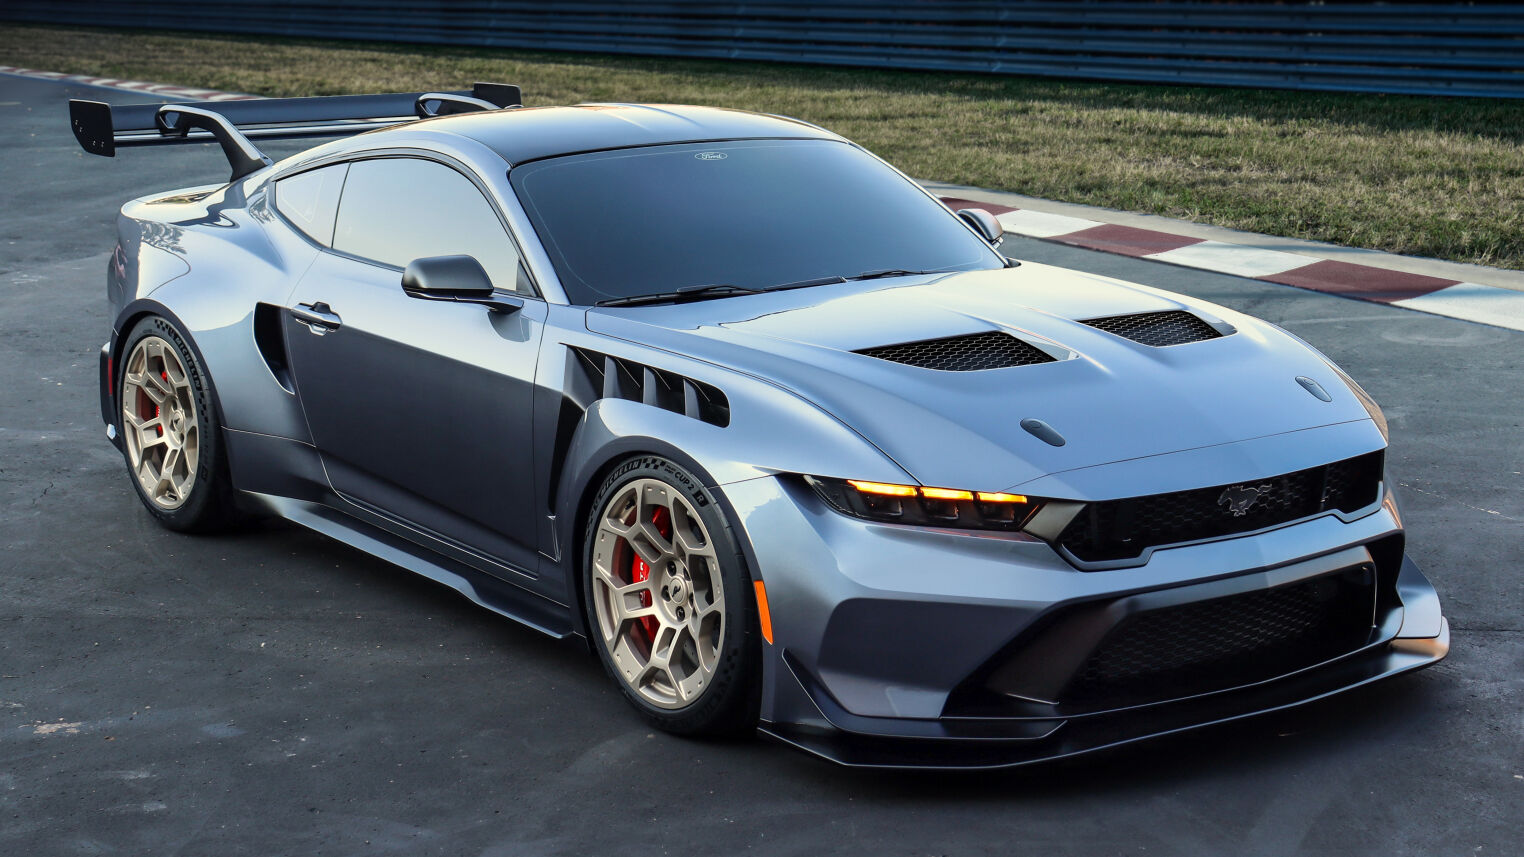 La toute nouvelle Mustang GTD : Une technologie de pointe homologuée pour la route, prête à défier les concurrents les plus redoutables